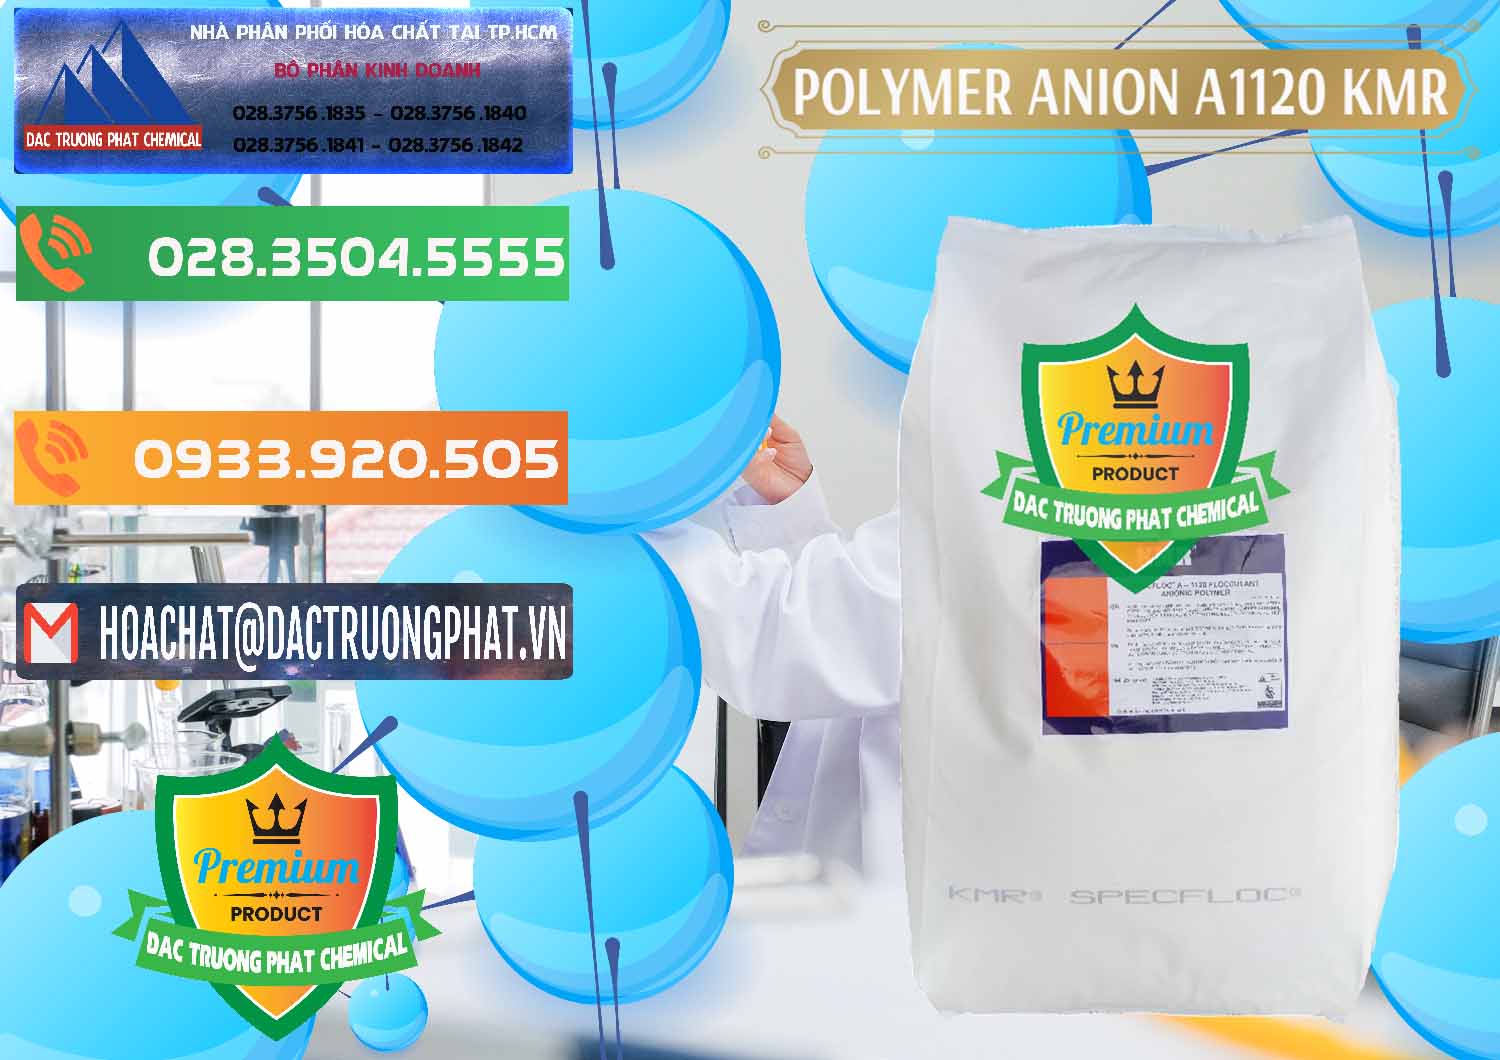 Cung cấp và bán Polymer Anion A1120 - KMR Anh Quốc England - 0119 - Nơi chuyên bán và phân phối hóa chất tại TP.HCM - hoachatxulynuoc.com.vn